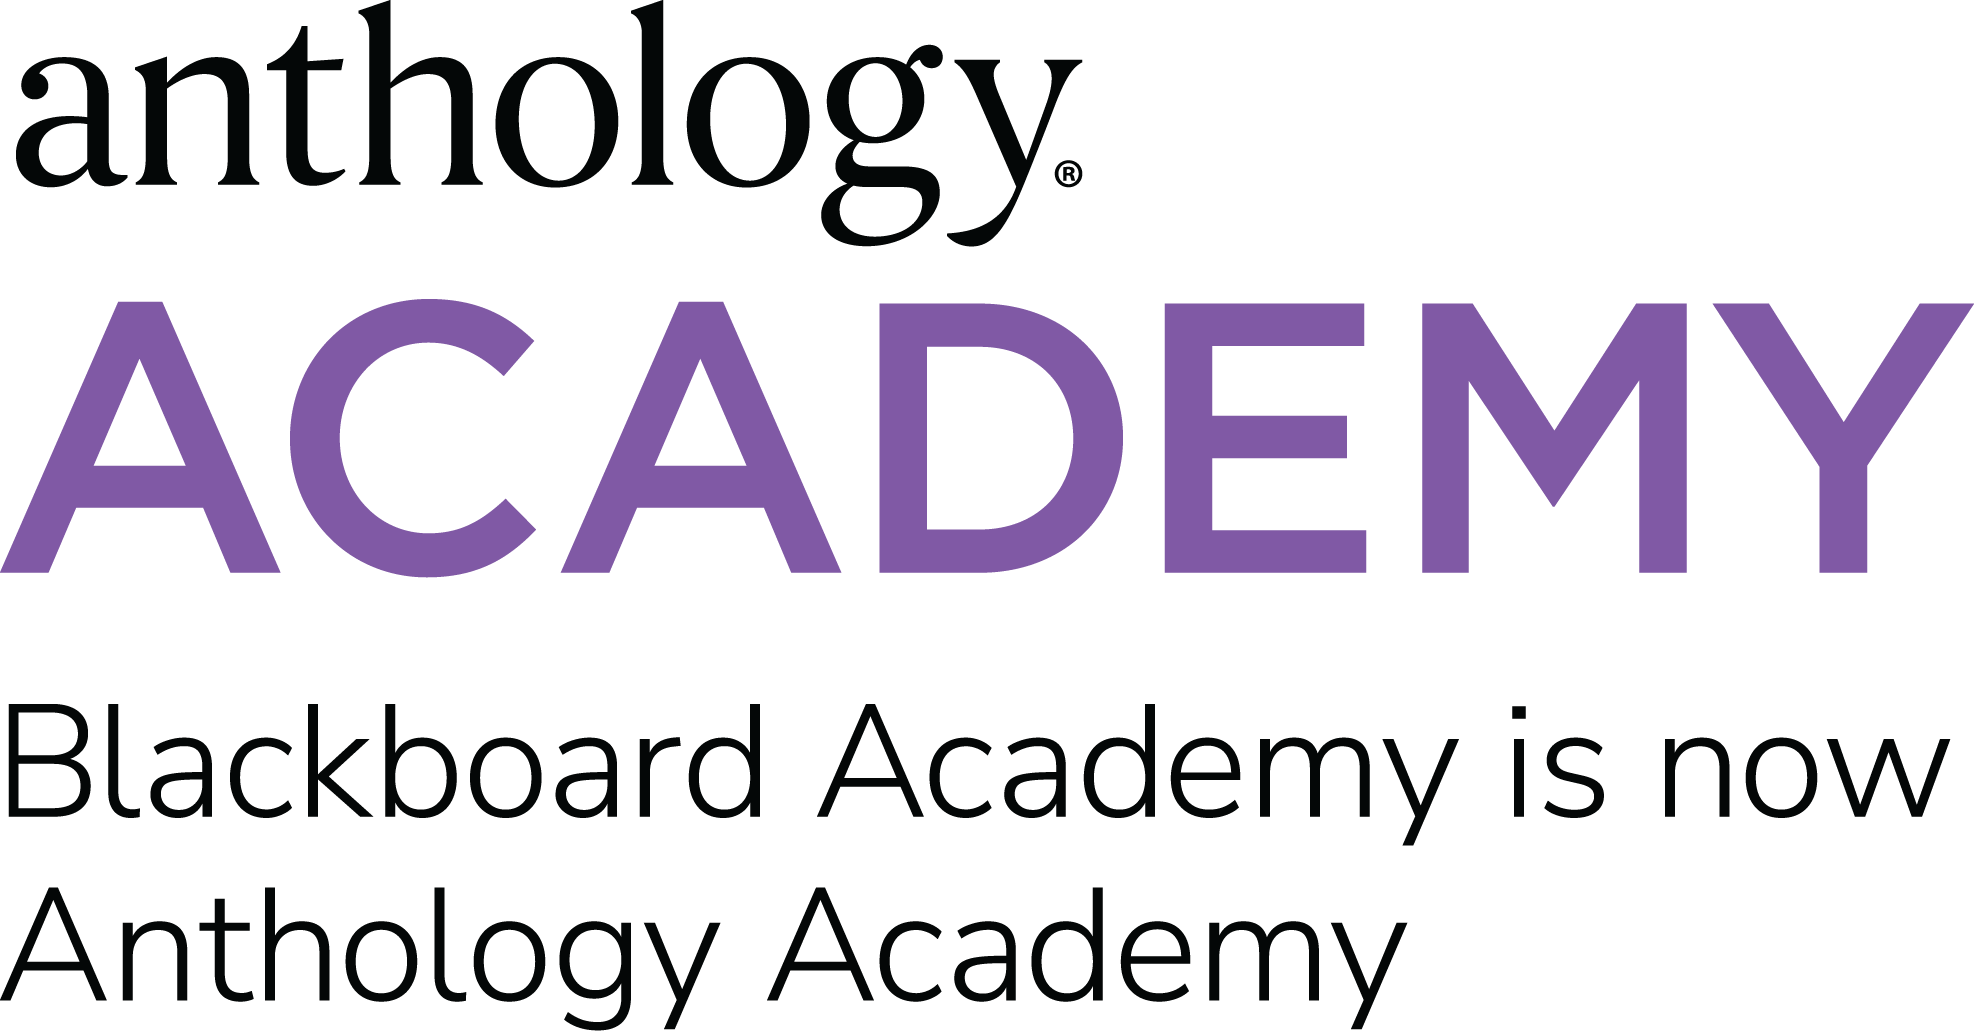 Anthology Academy logo with subtext, Blackboard Academy is now Anthology Academy